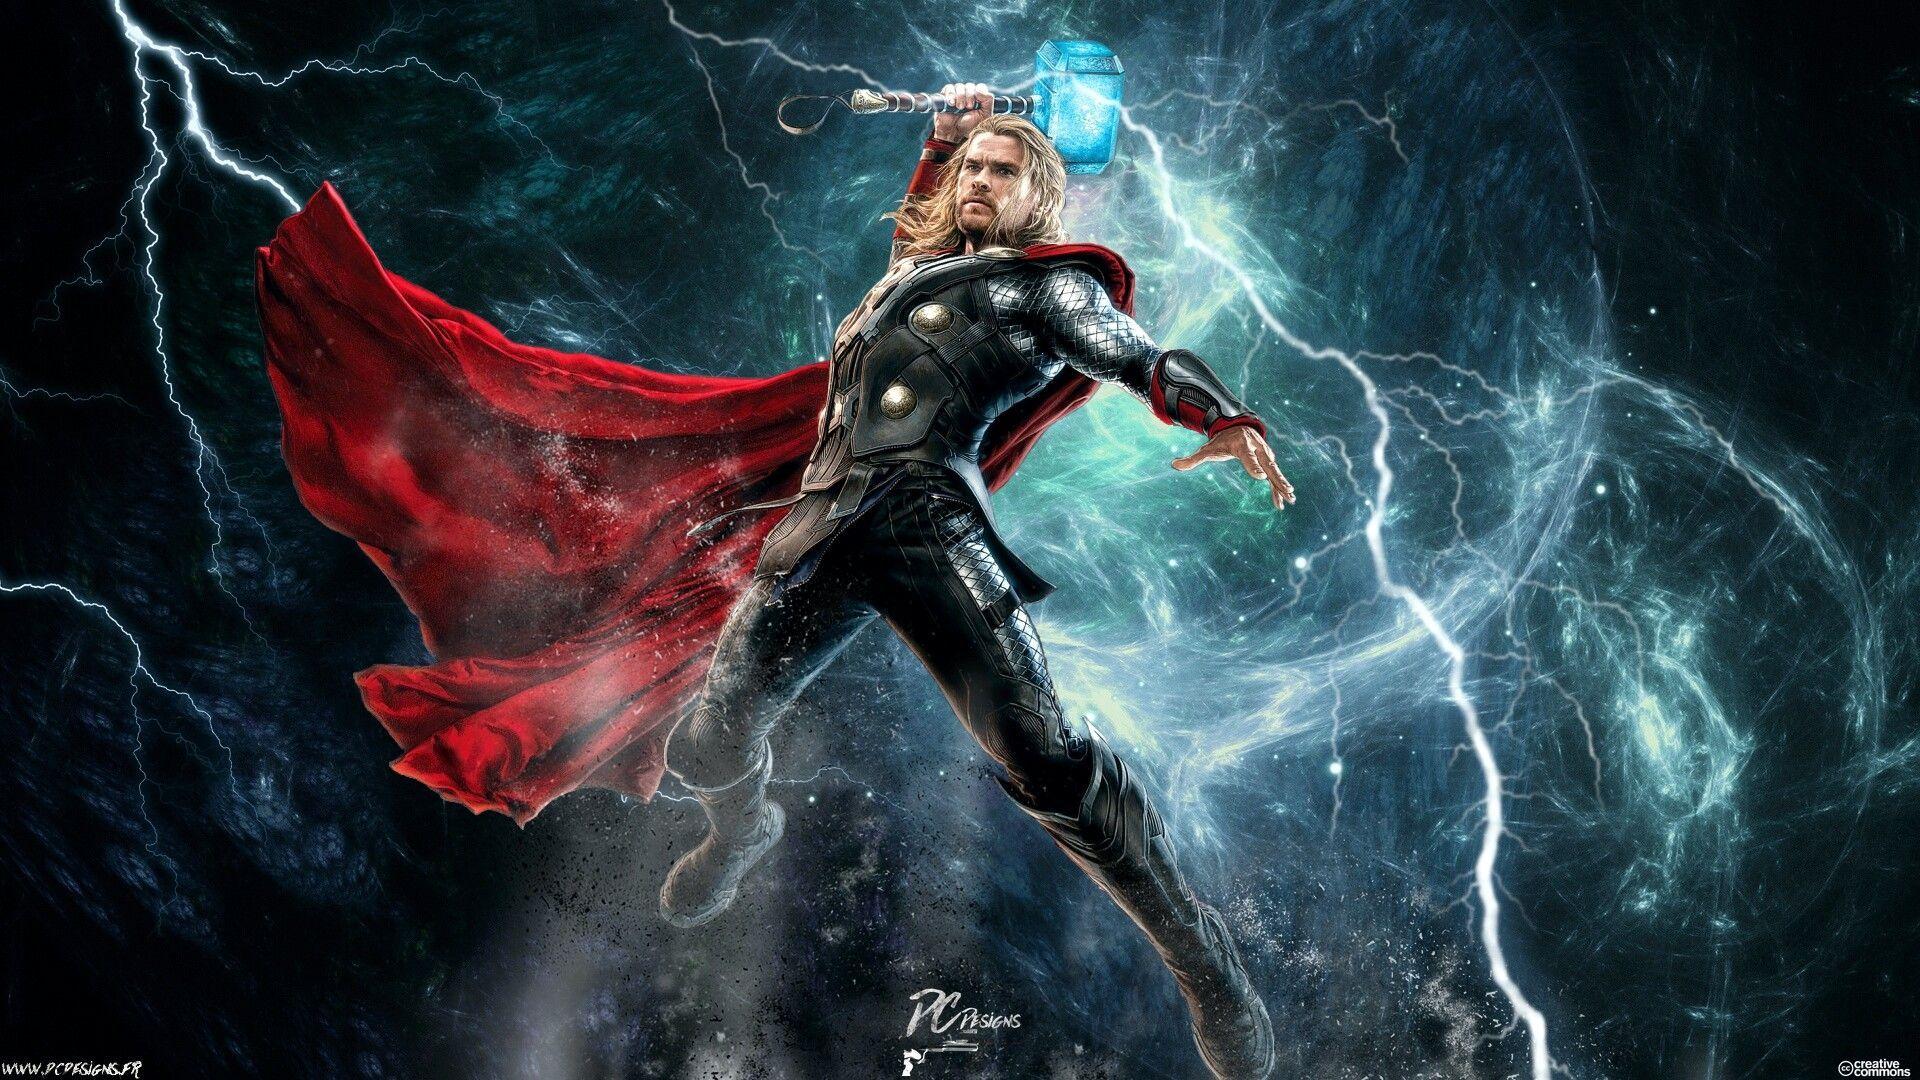 Thor Lightning 4K Wallpapers - Top Free